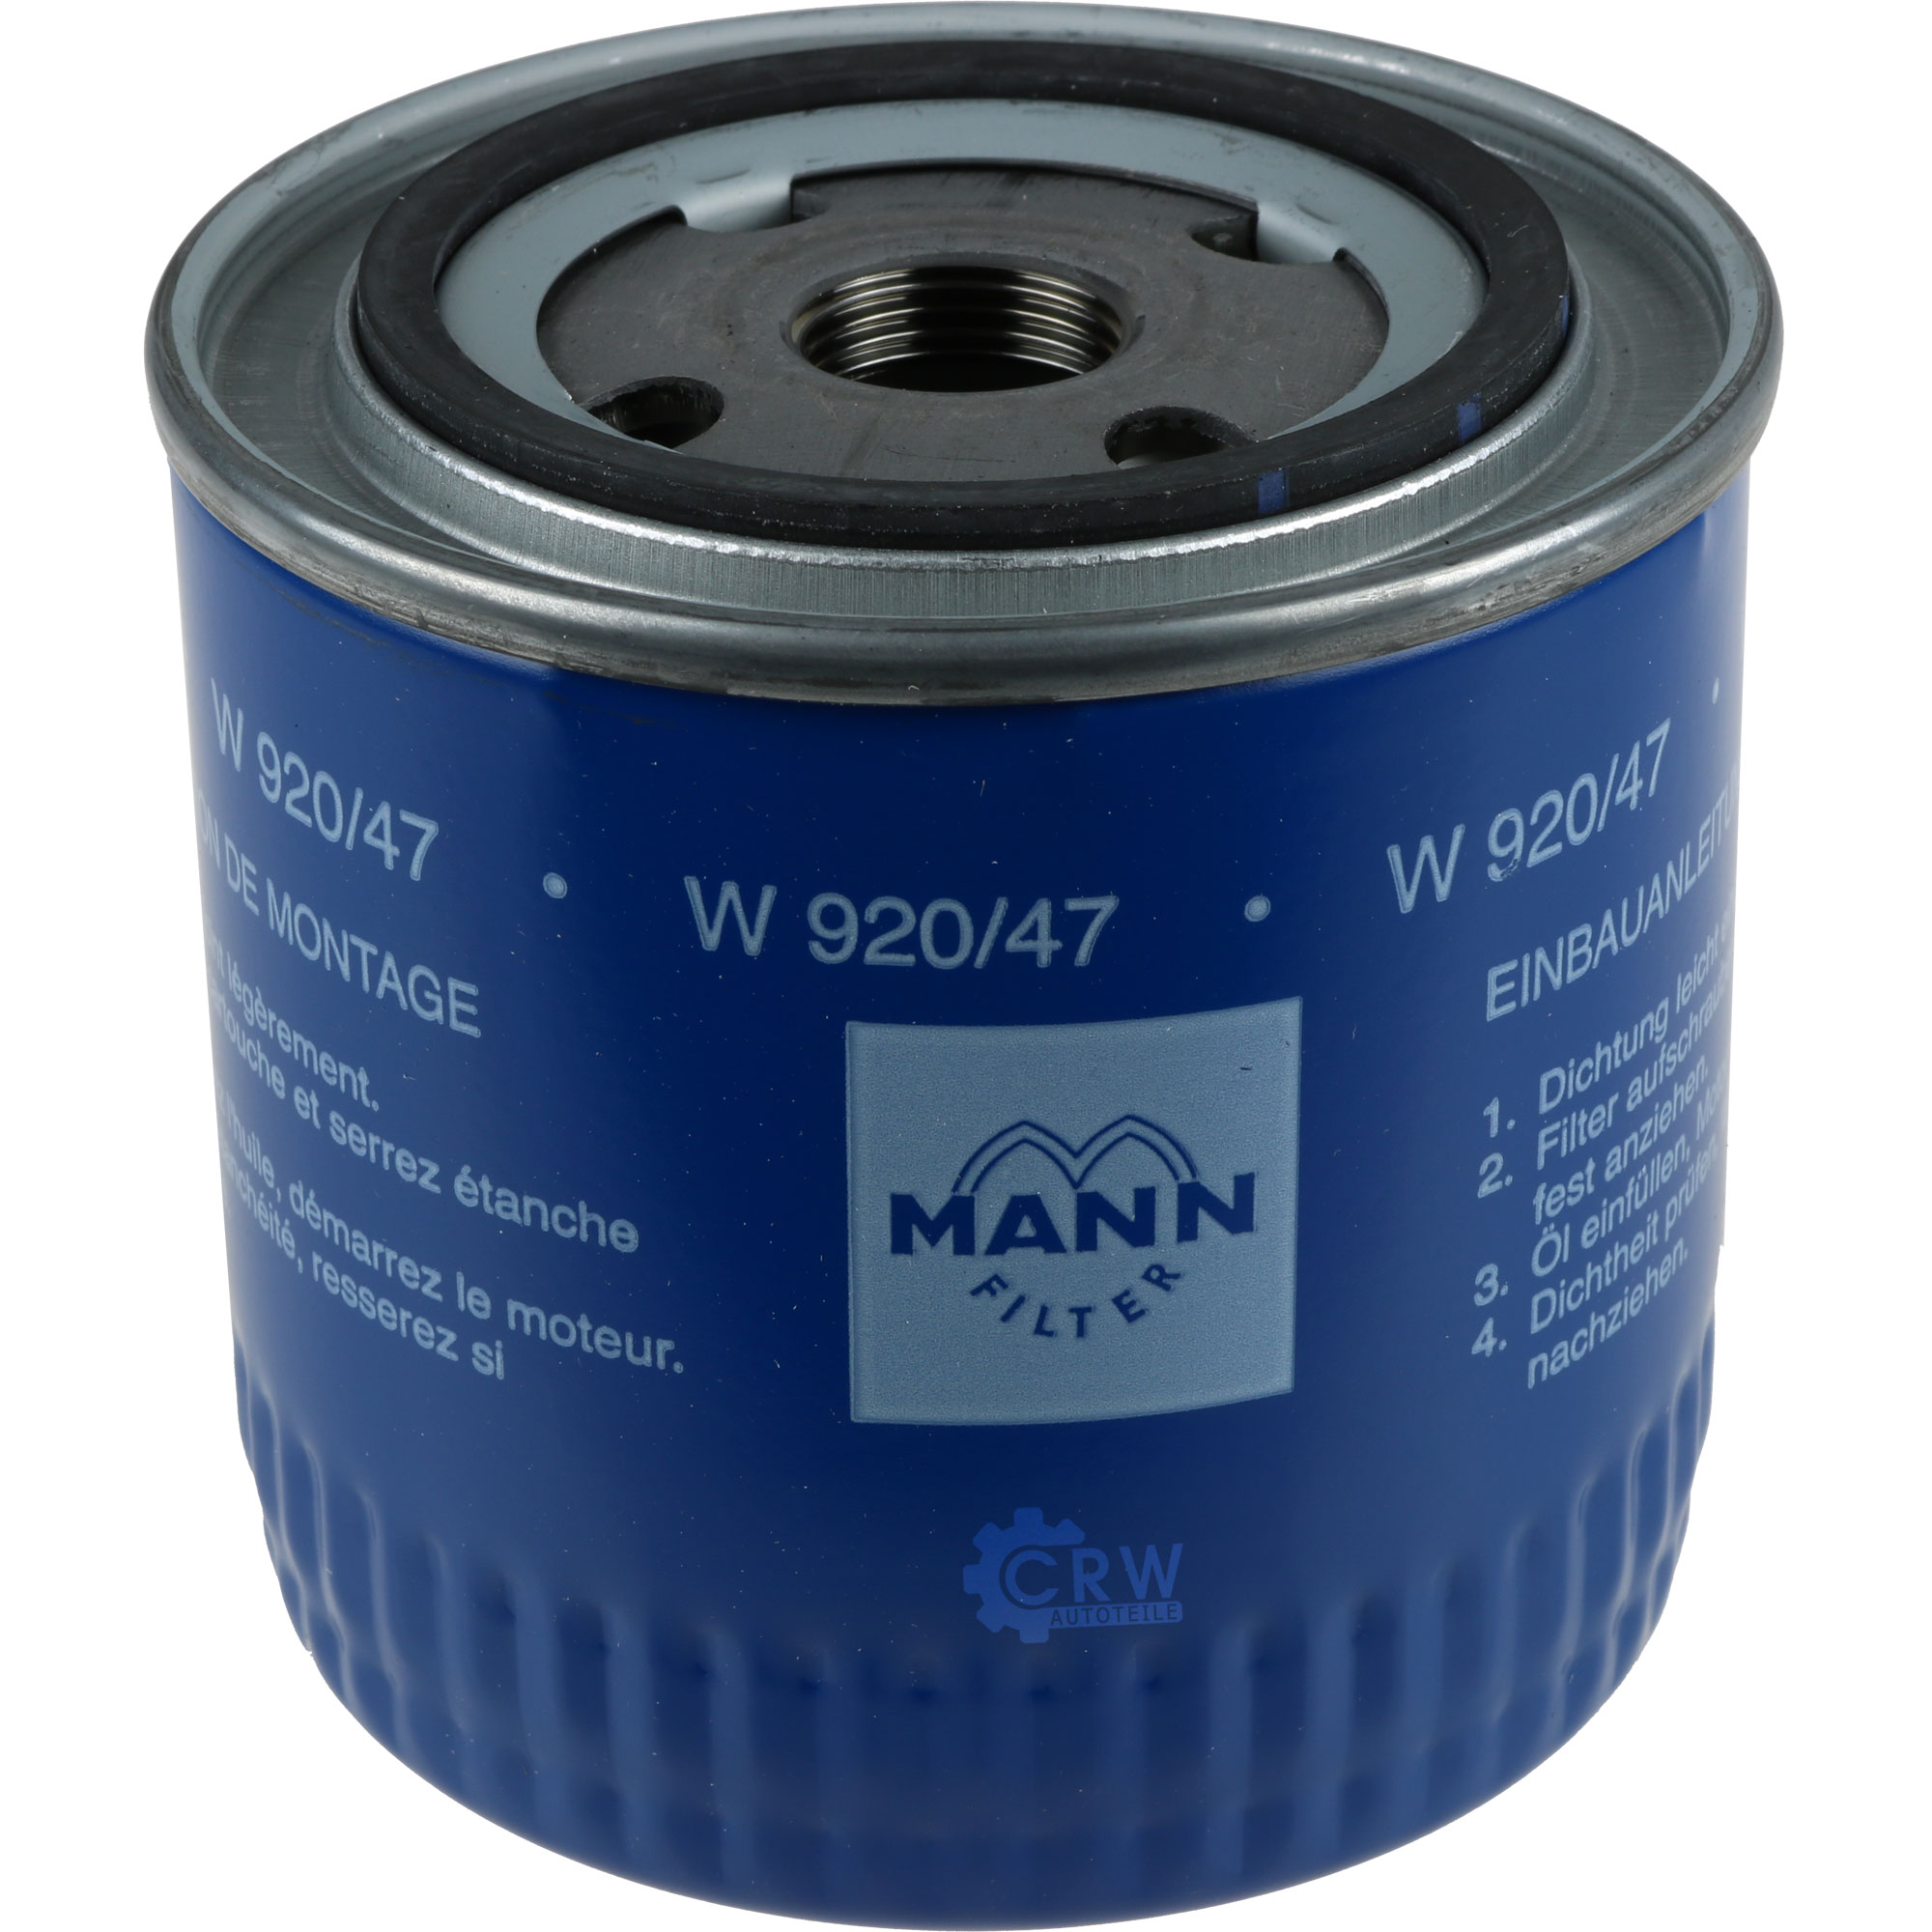 MANN-FILTER Ölfilter W 920/47 Oil Filter